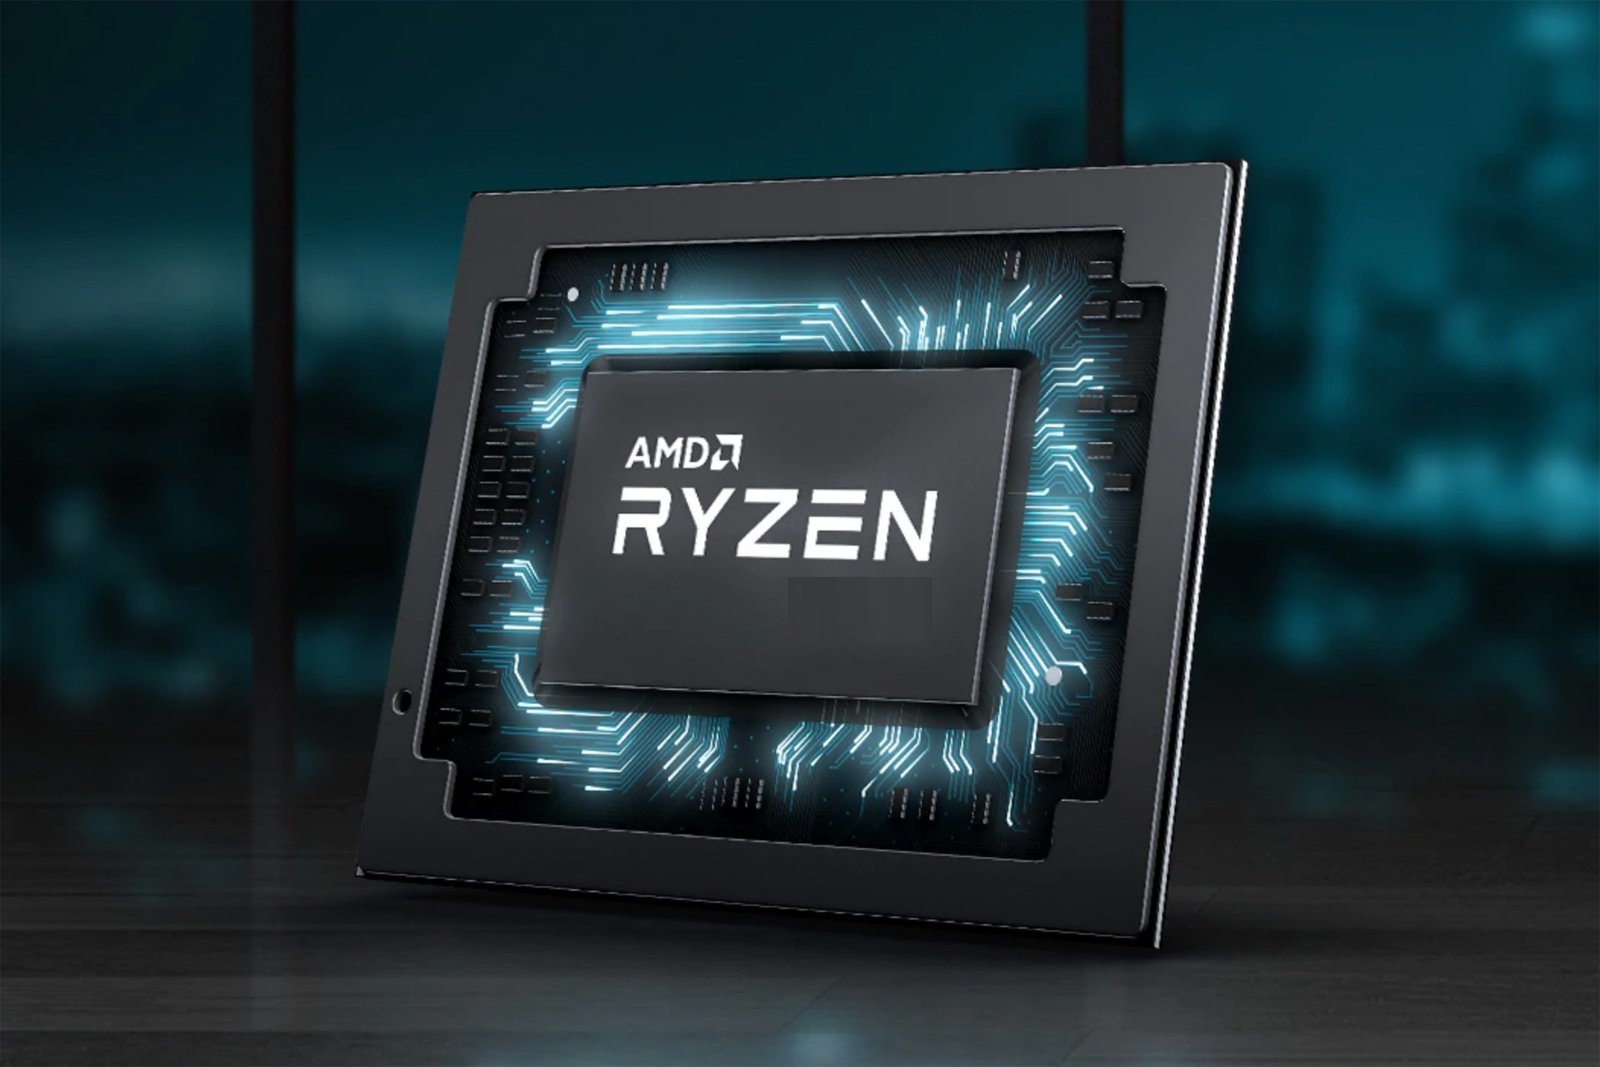 AMD Ryzen mobil işlemci